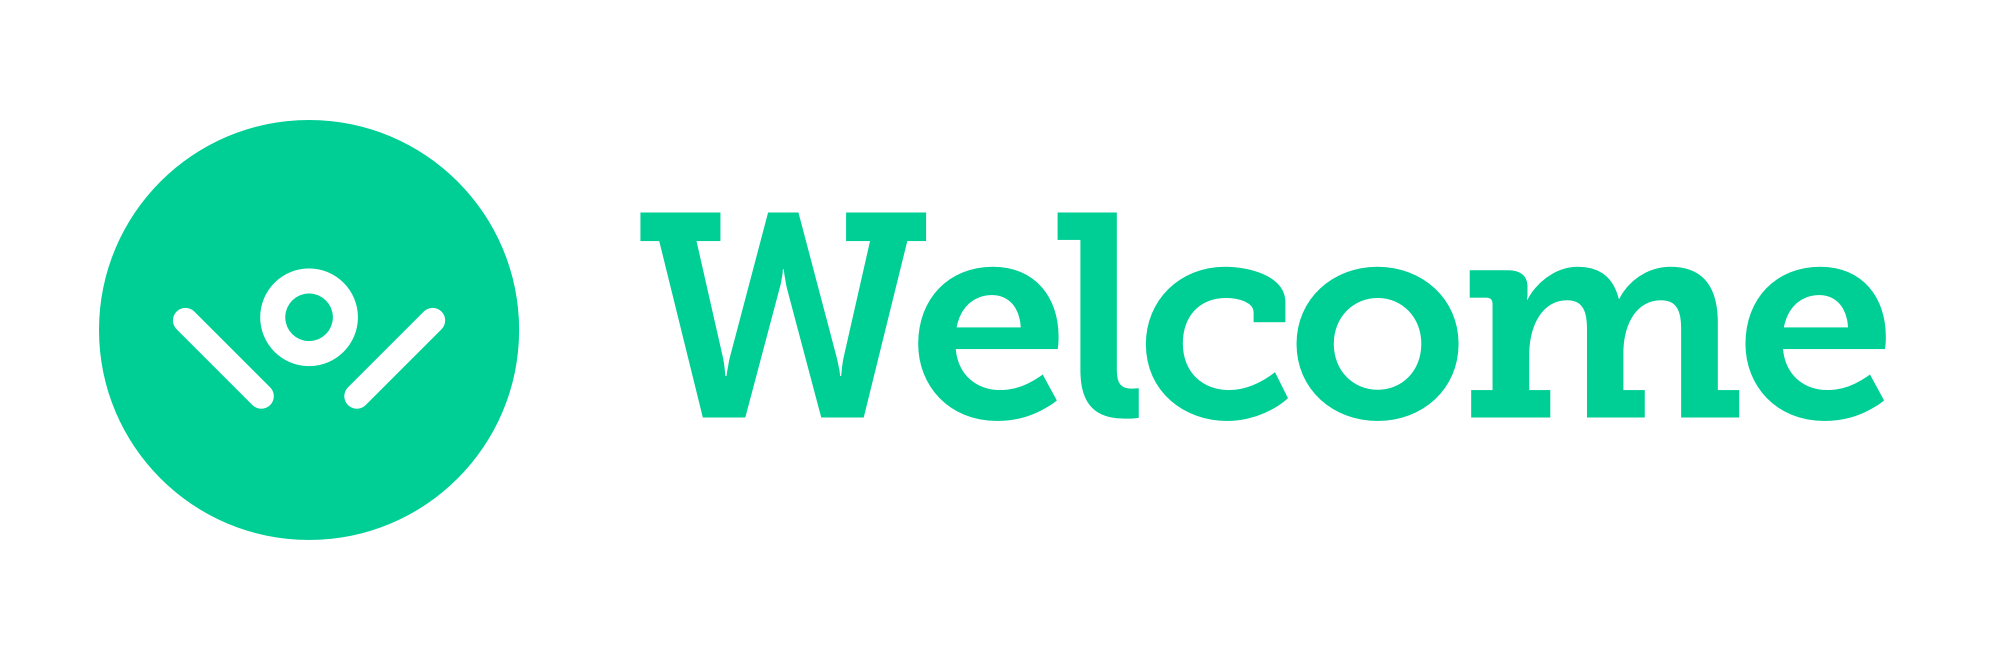 Welcome to Metaflow | Metaflow Docs